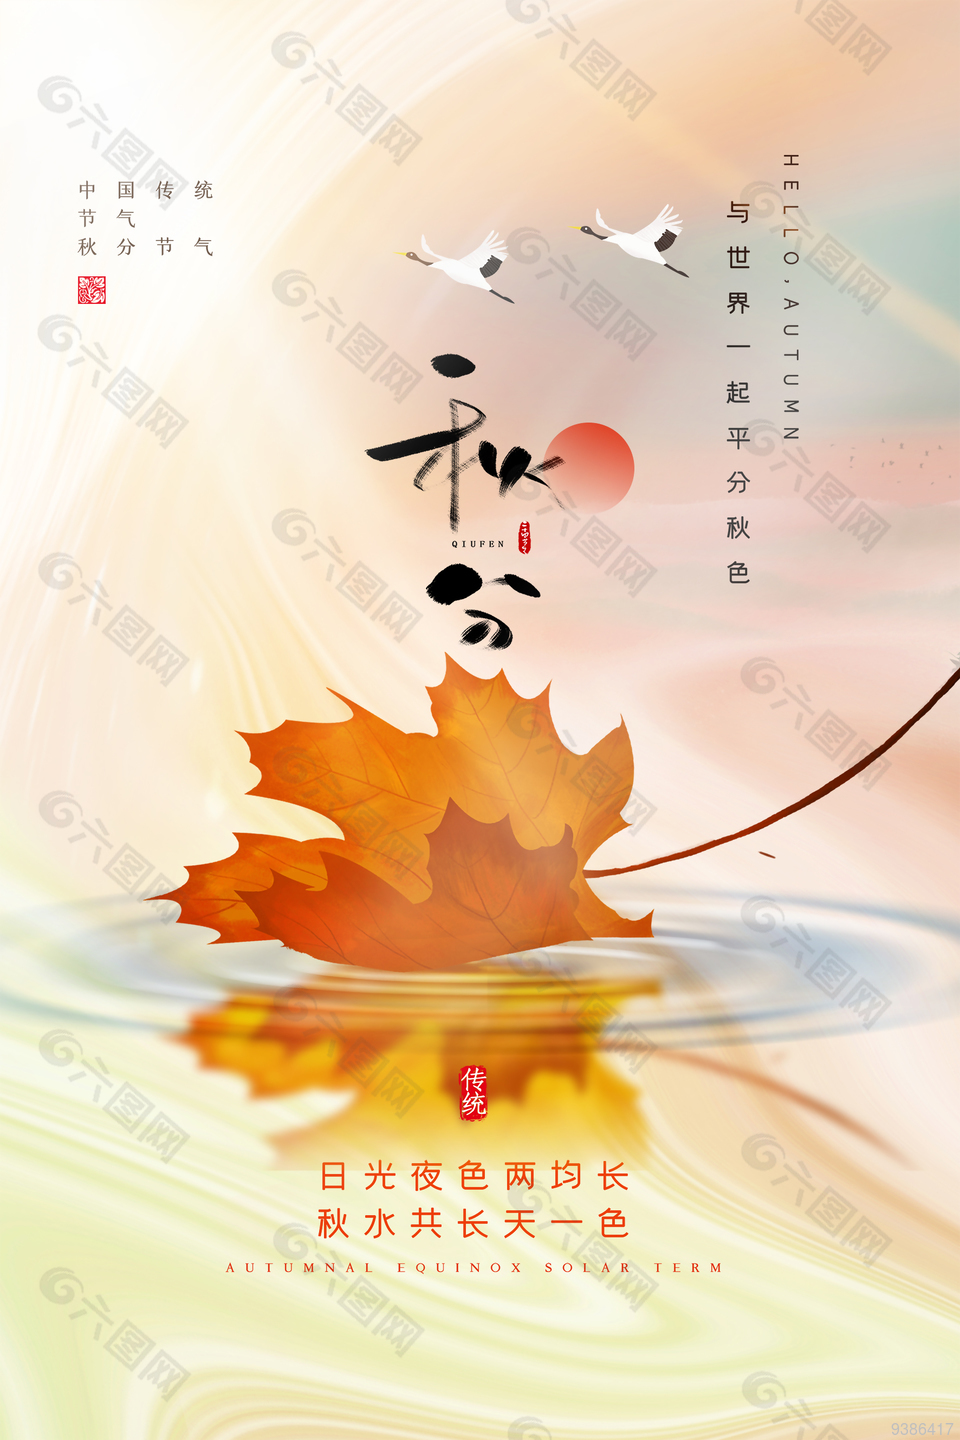 中国传统节气秋分24节气海报下载